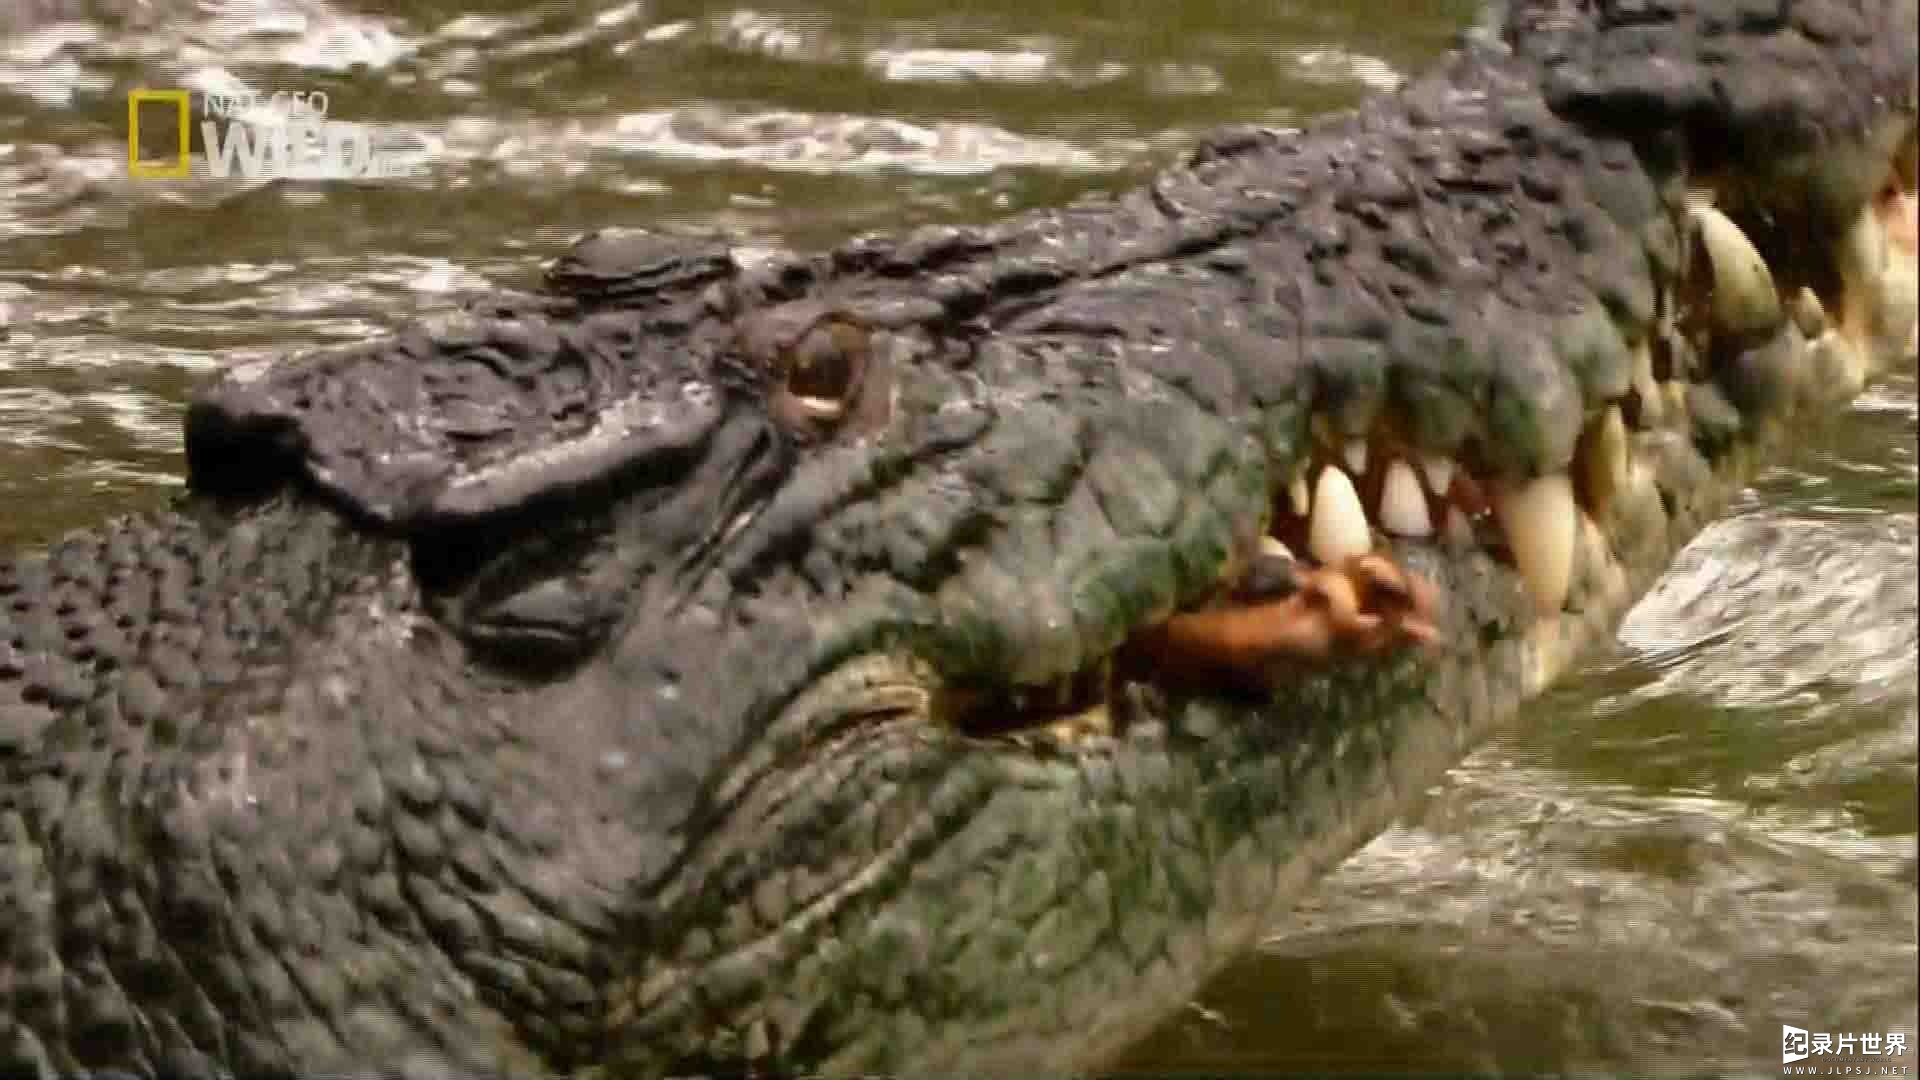 国家地理纪录片《鳄鱼之王 Crocodile King 2009》全1集